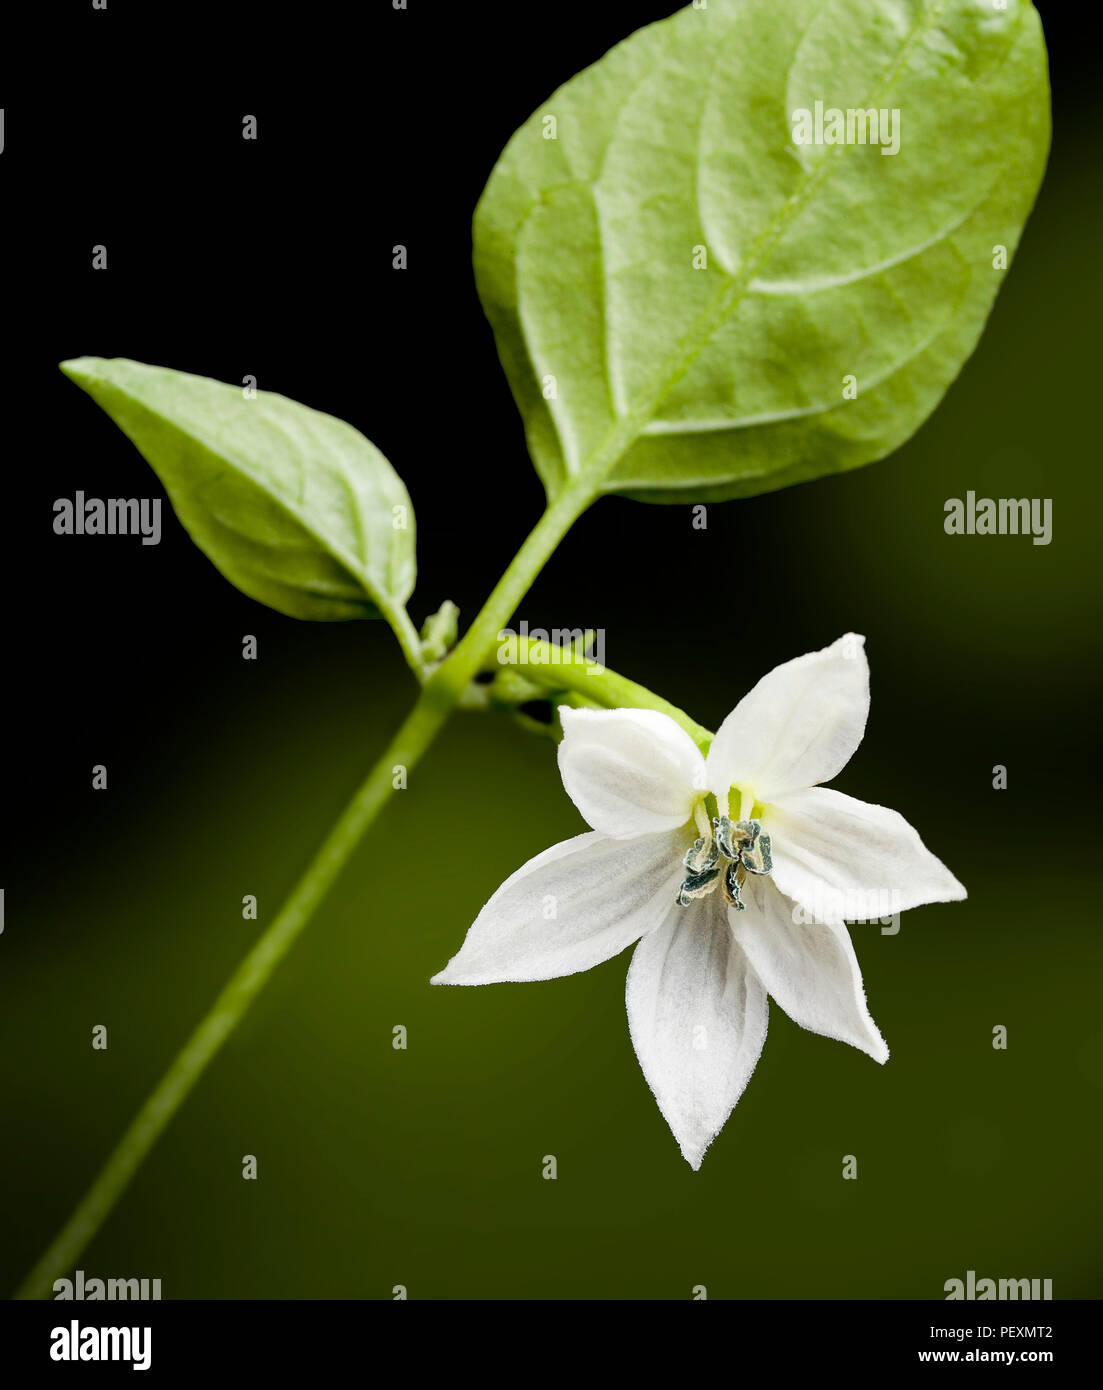 Fiore peperoncino immagini e fotografie stock ad alta risoluzione - Alamy